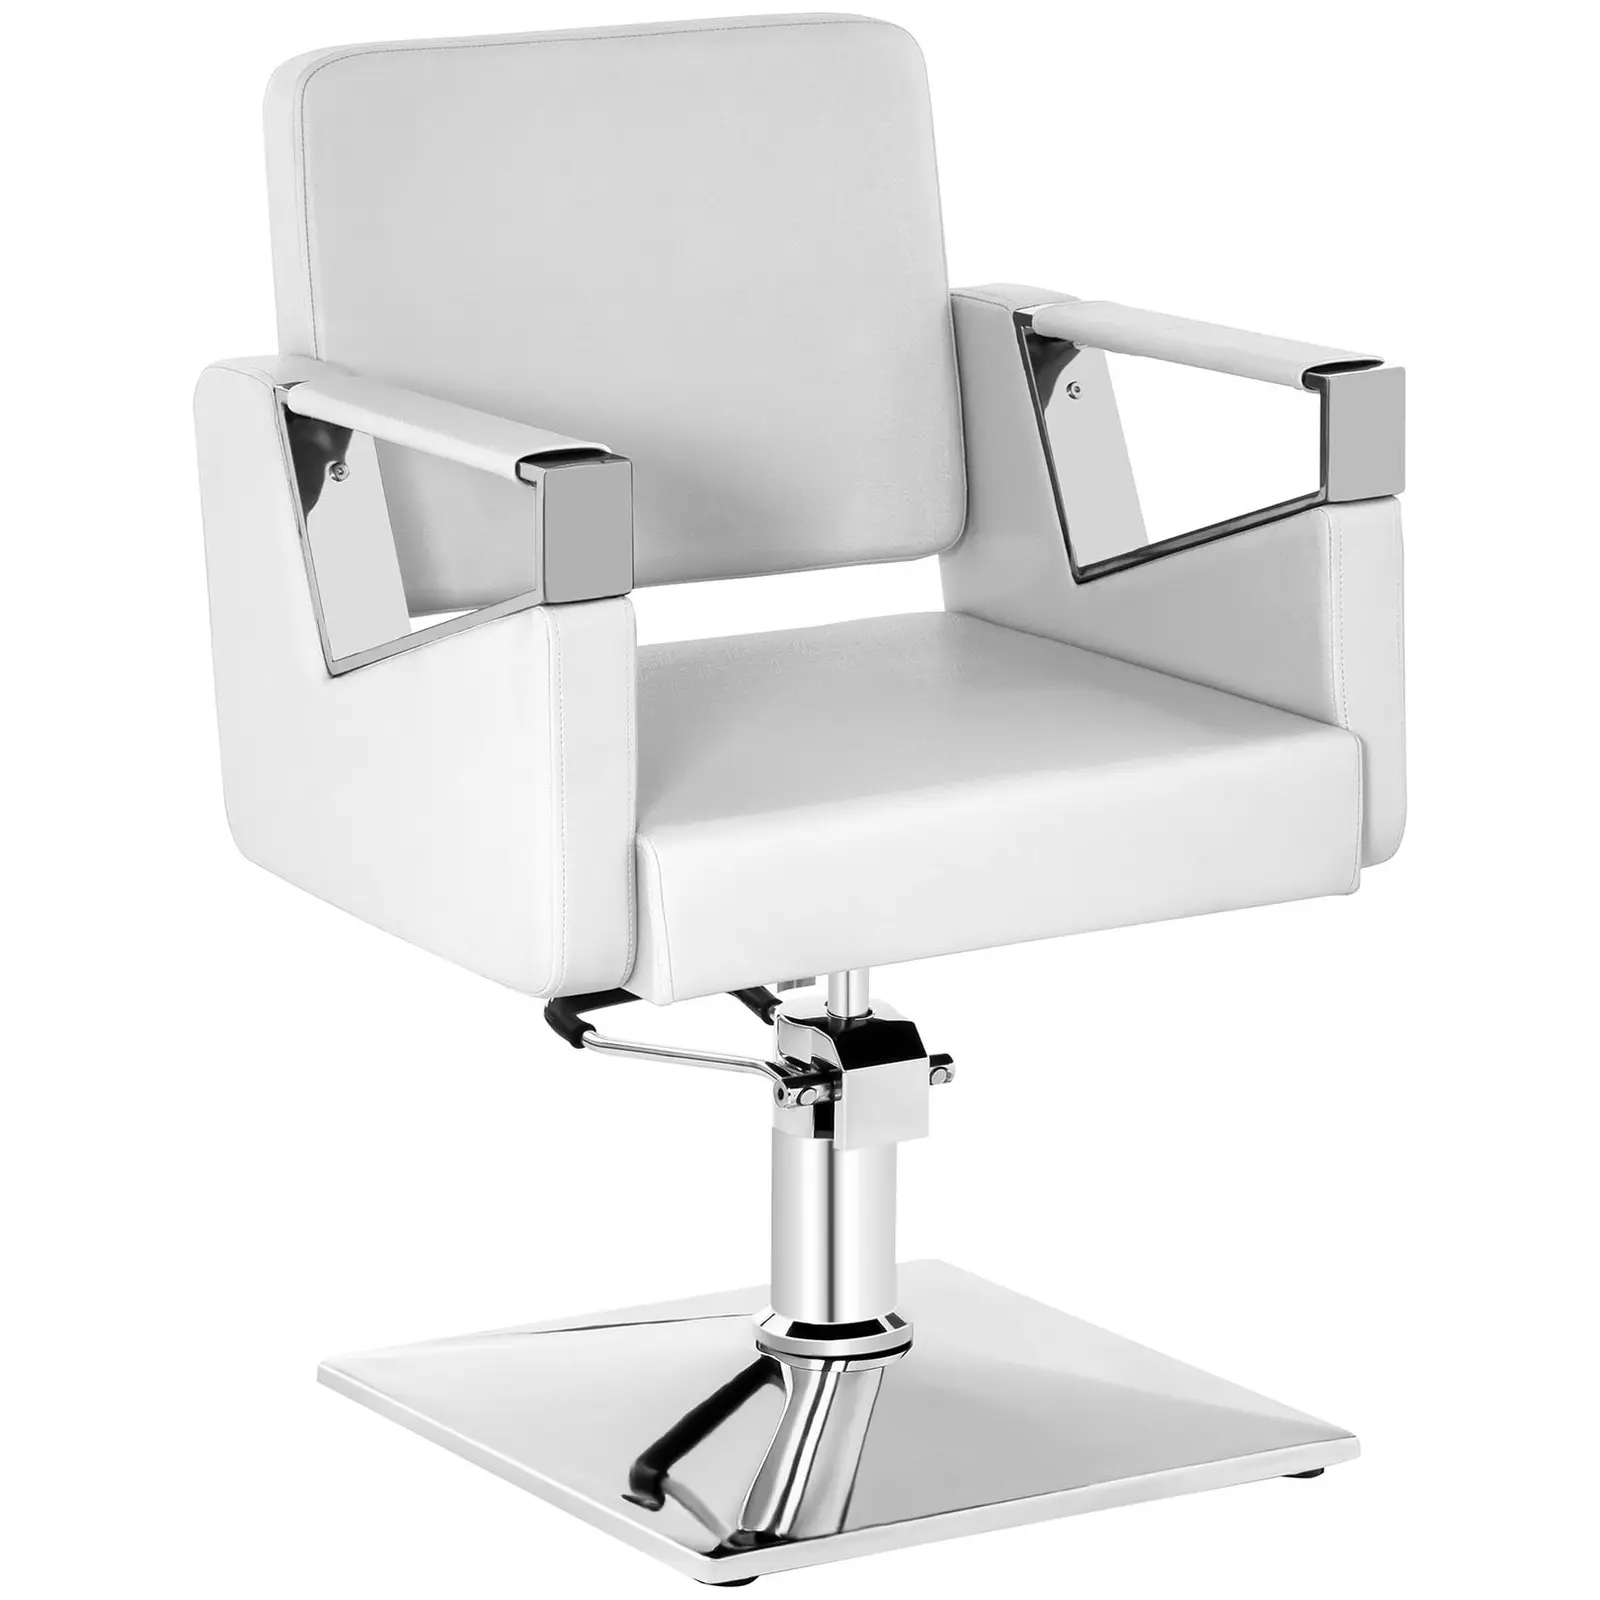 Grožio salono kėdė - 445-550 mm - matinė balta